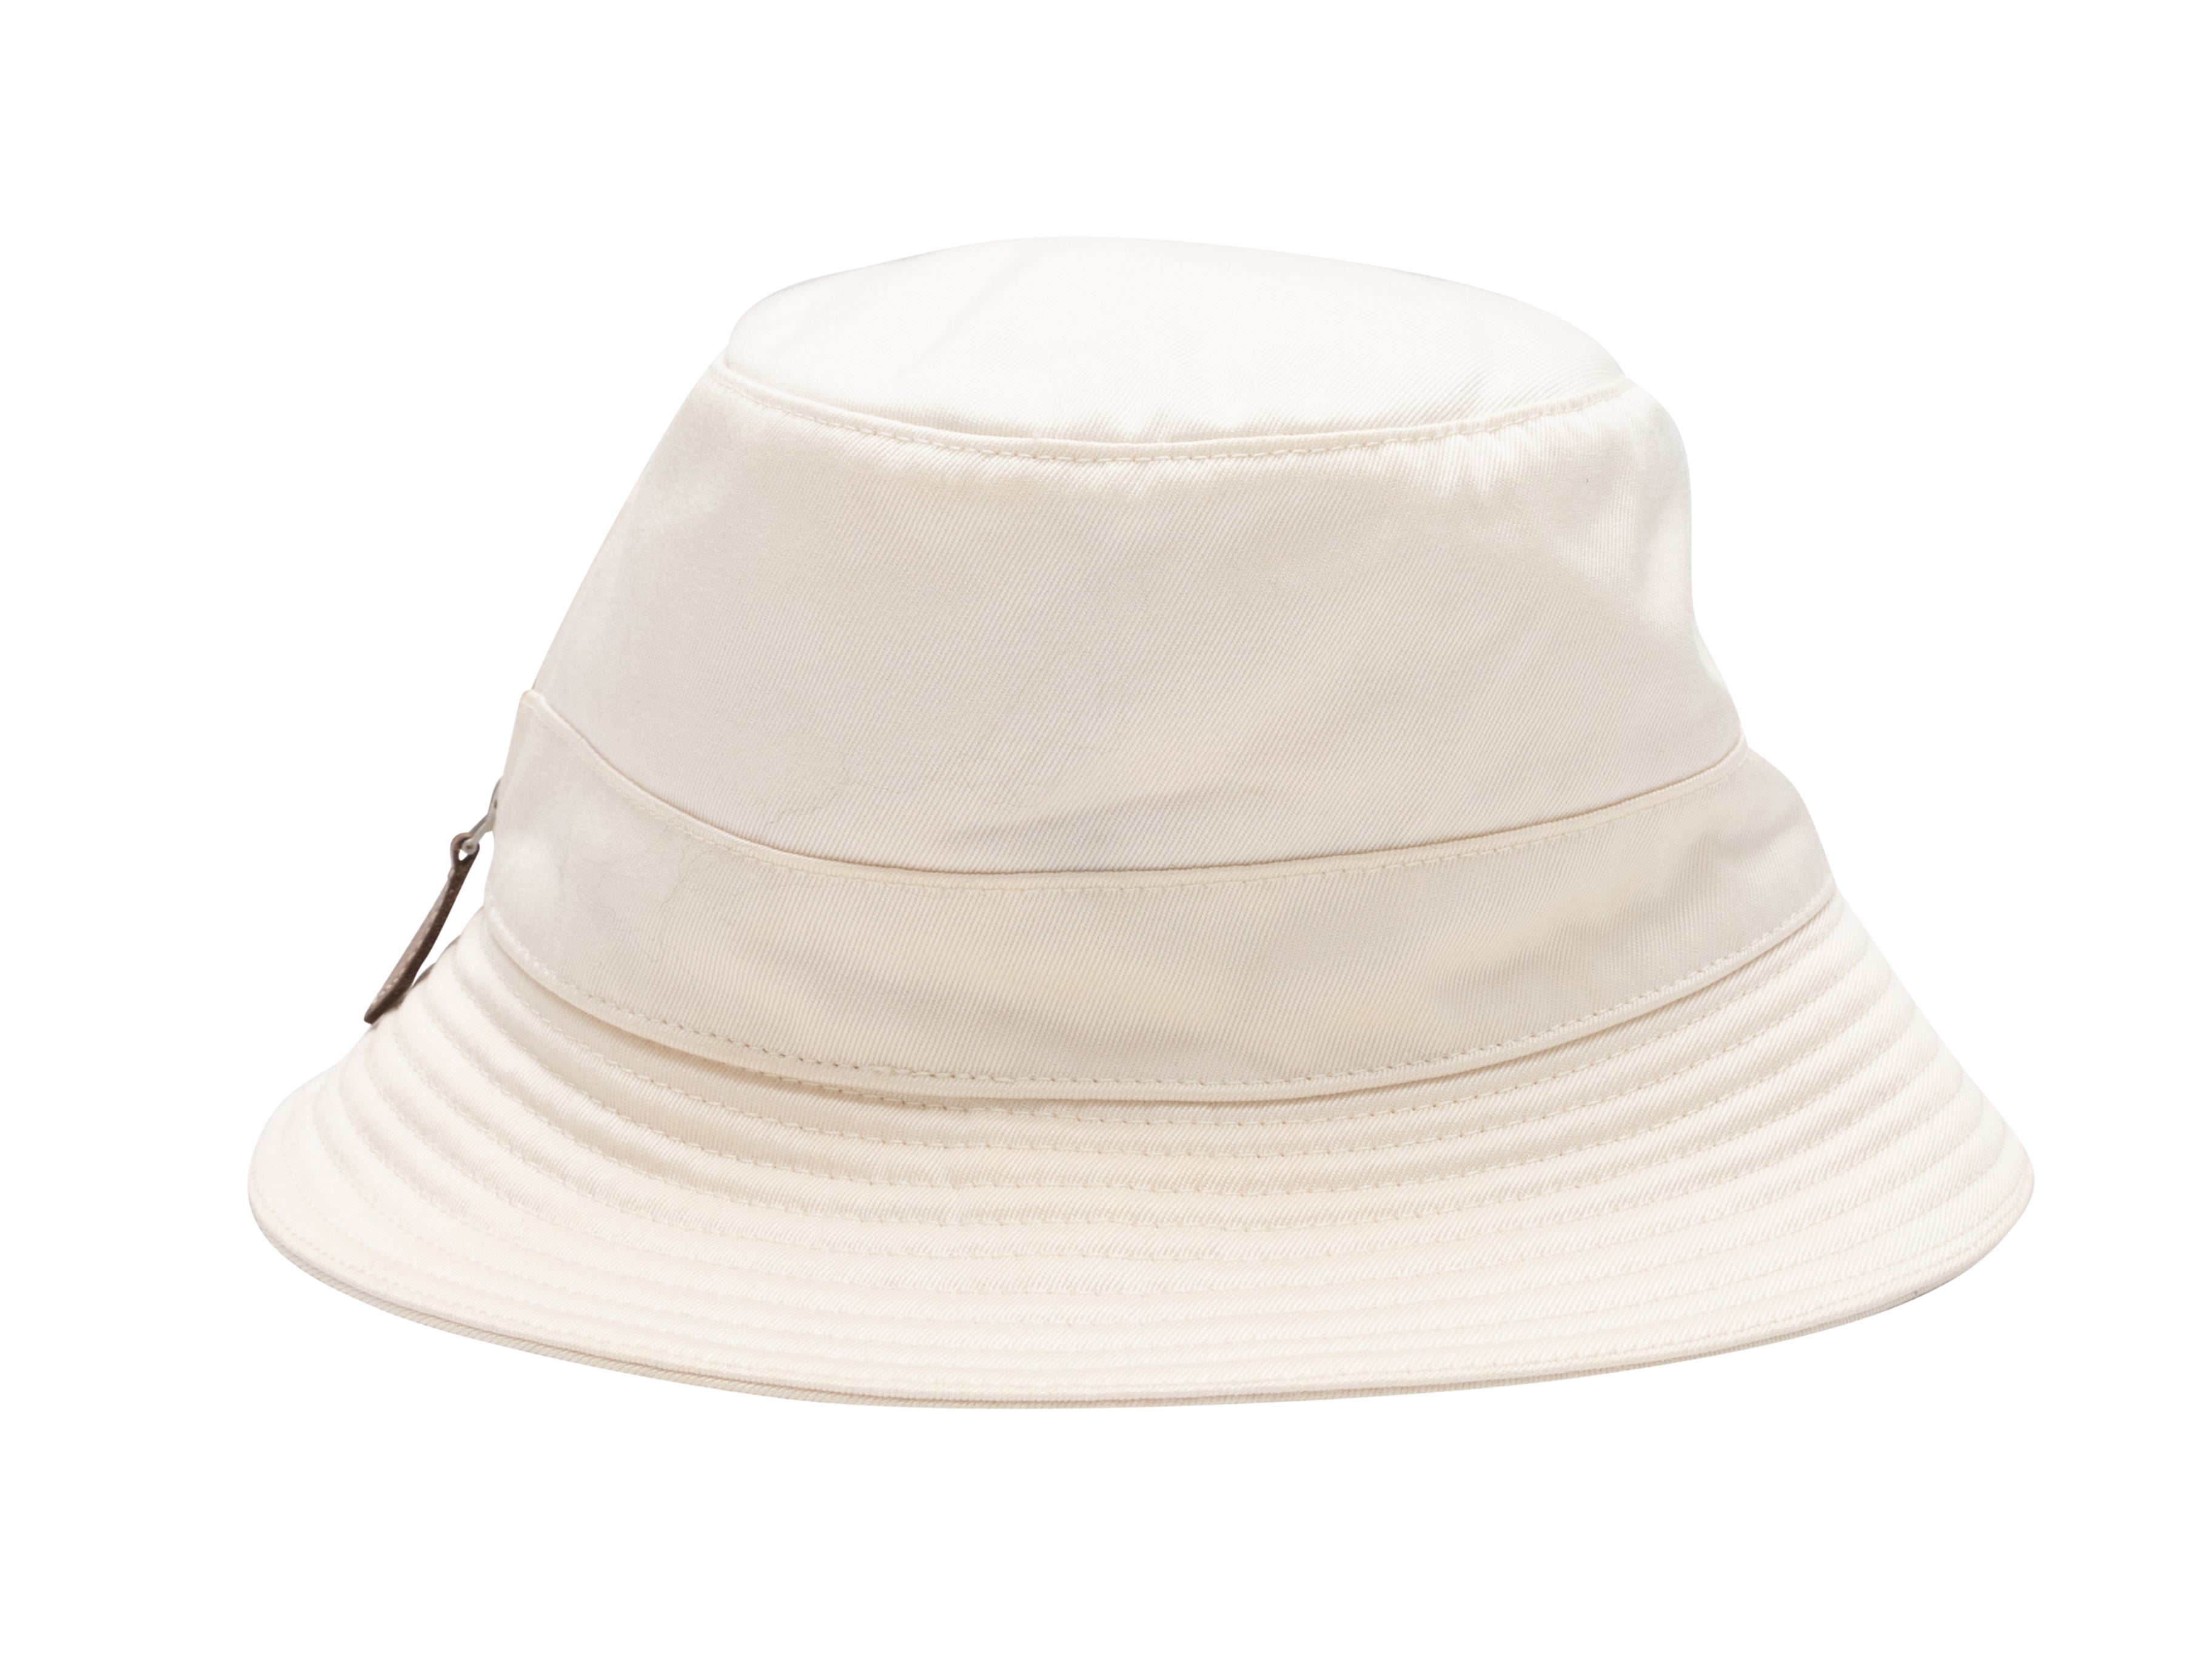 Louis Vuitton - Authenticated Hat - Cotton Multicolour Plain for Women, Very Good Condition